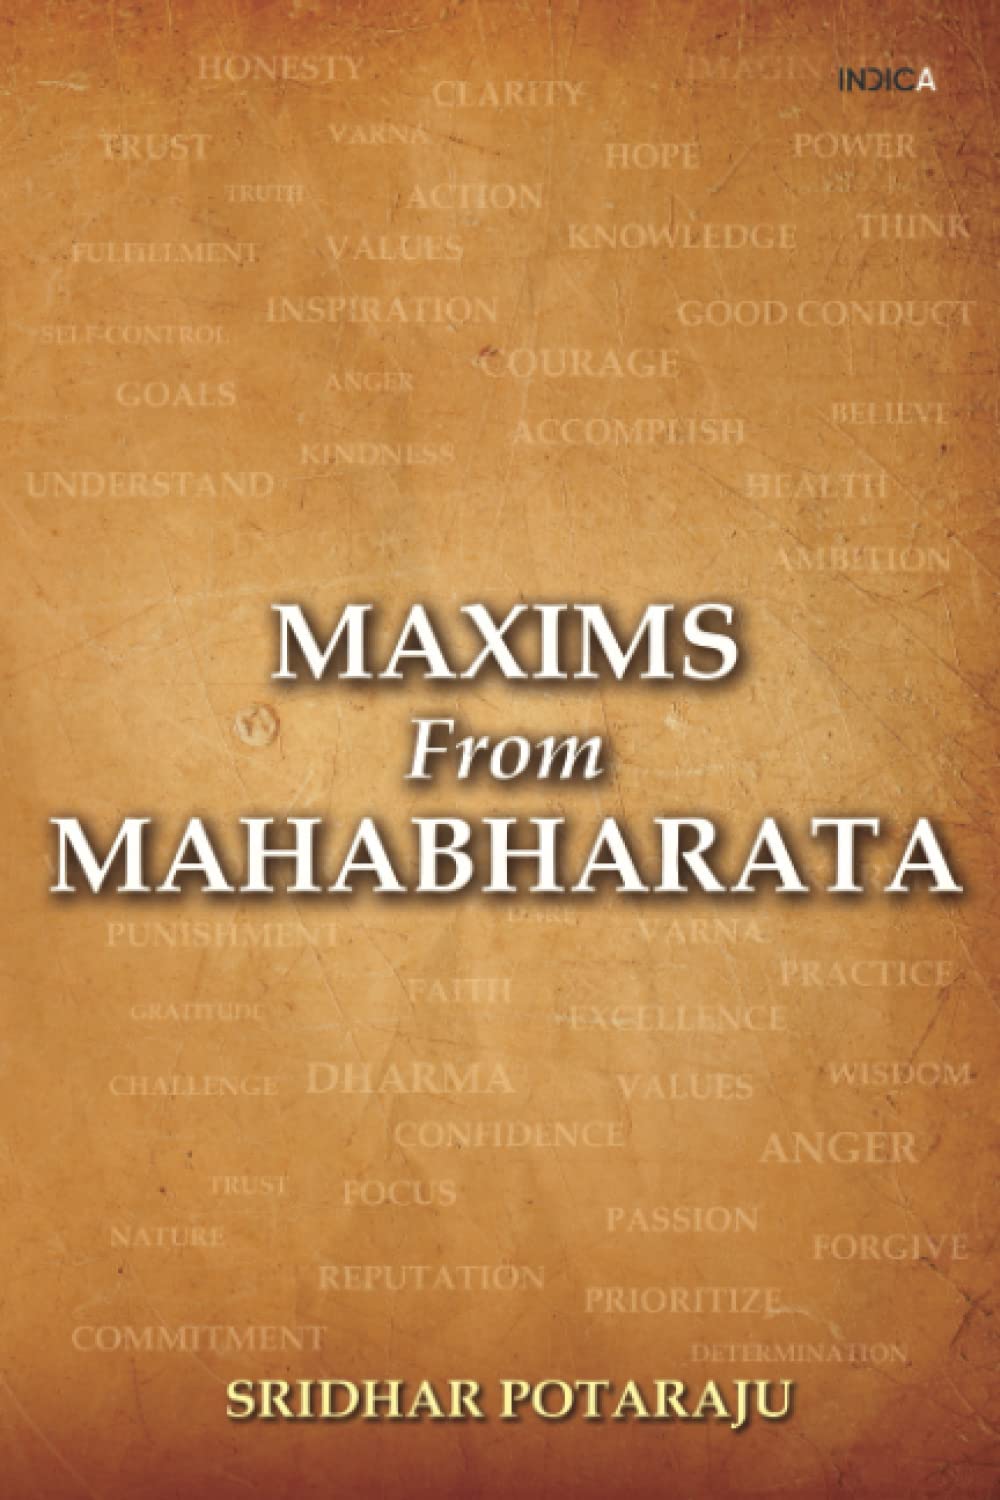 Maxims from Mahabharata